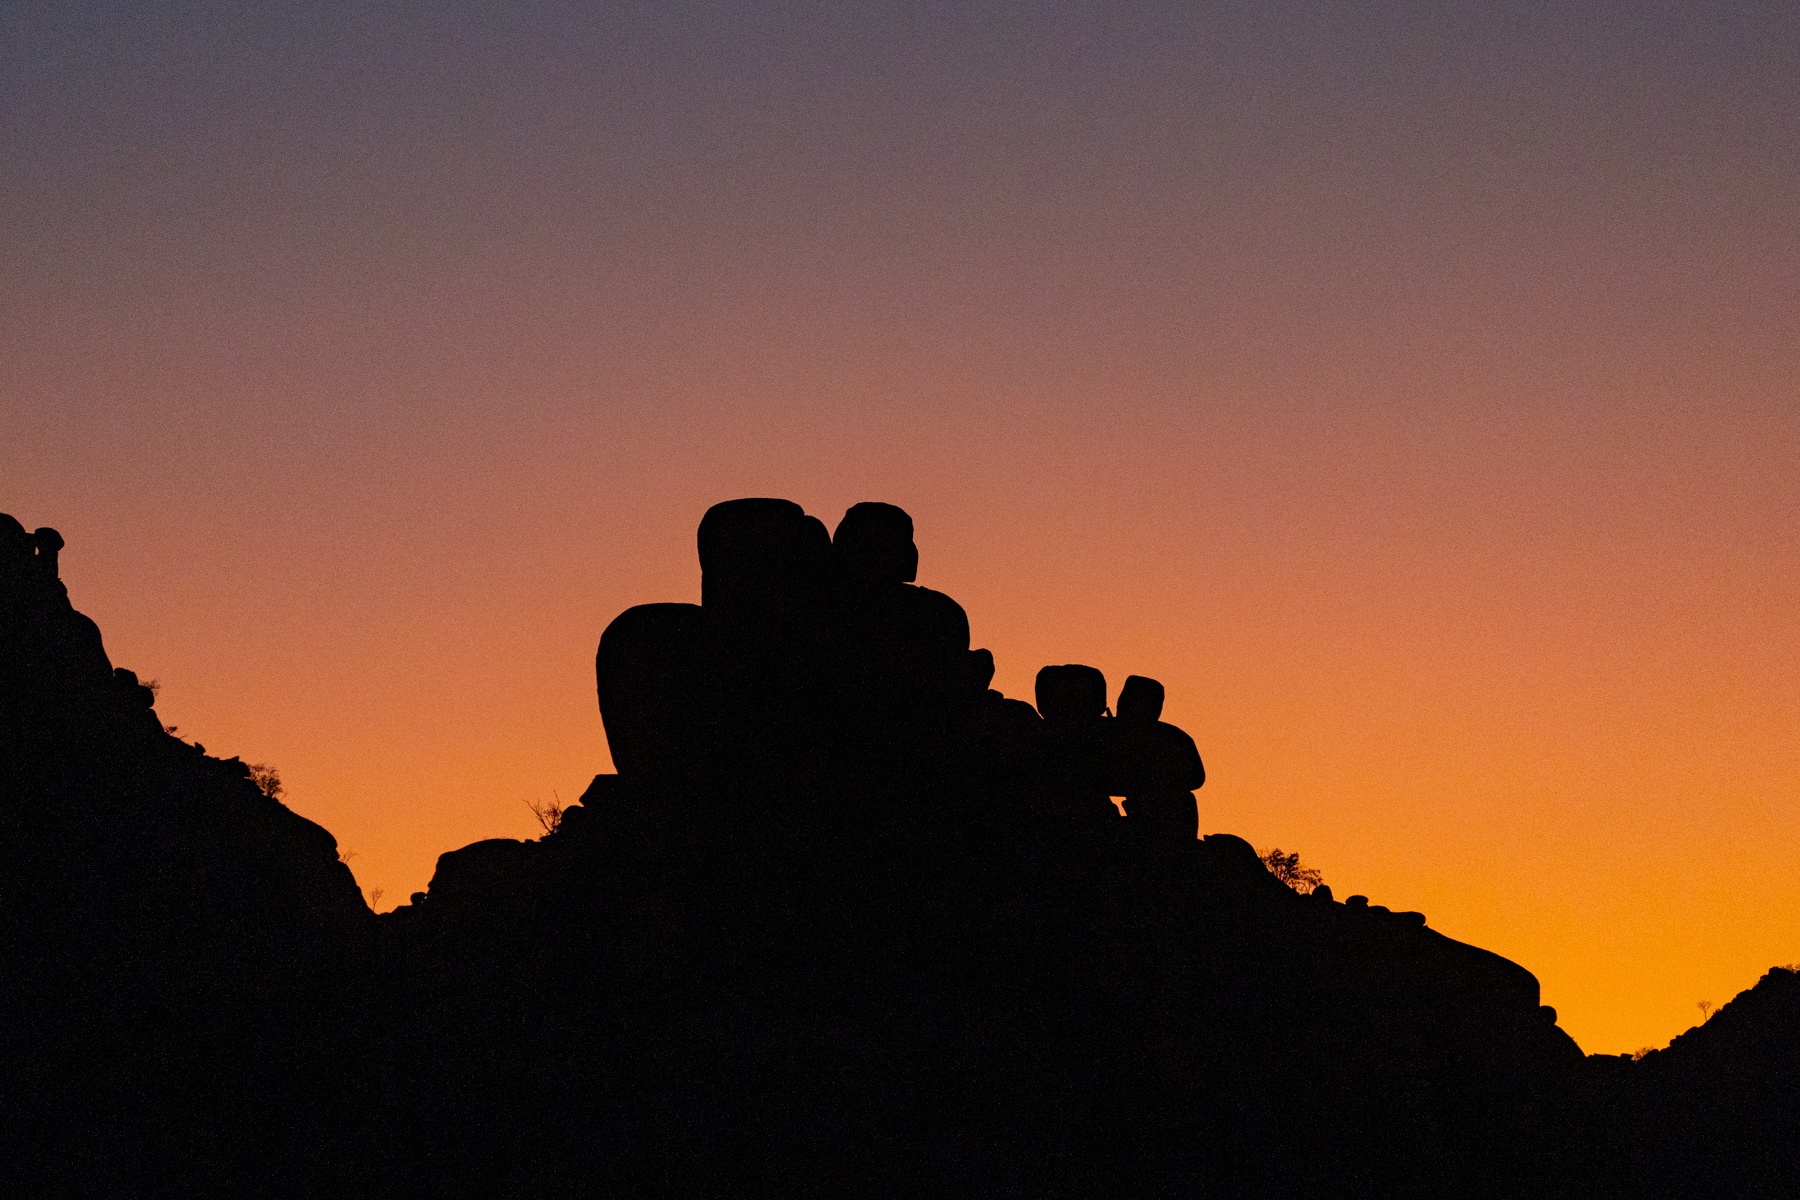 Kopje sunrise in remote Namibia